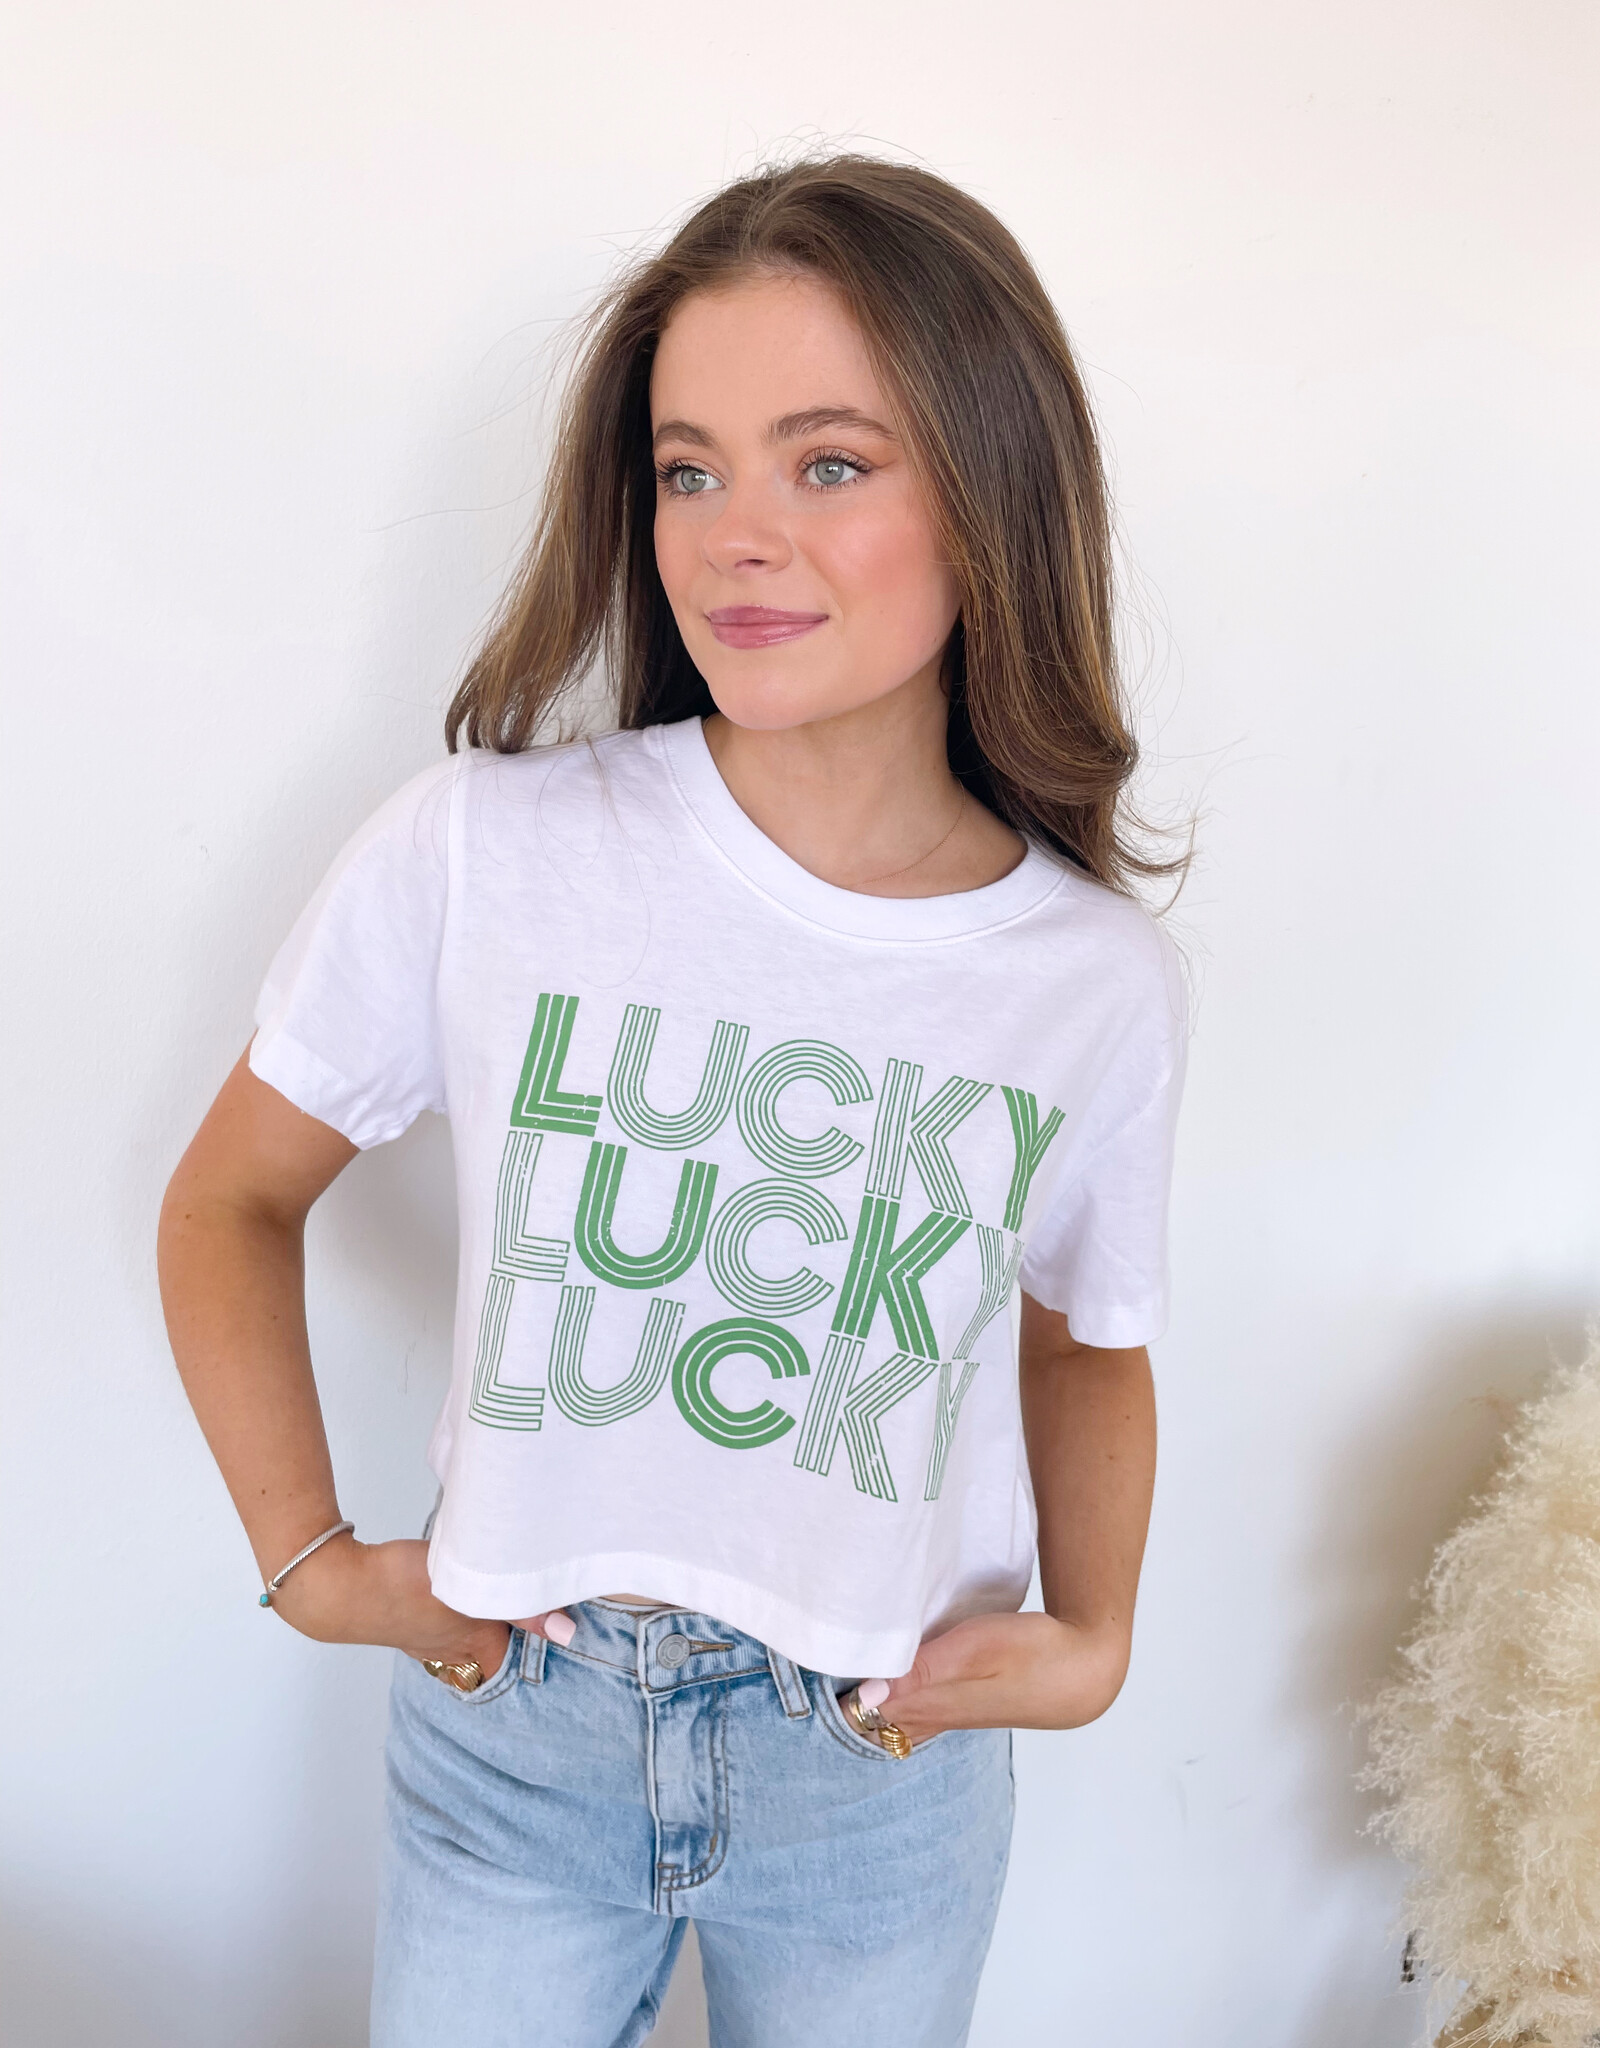 Lucky Crop T-Shirt